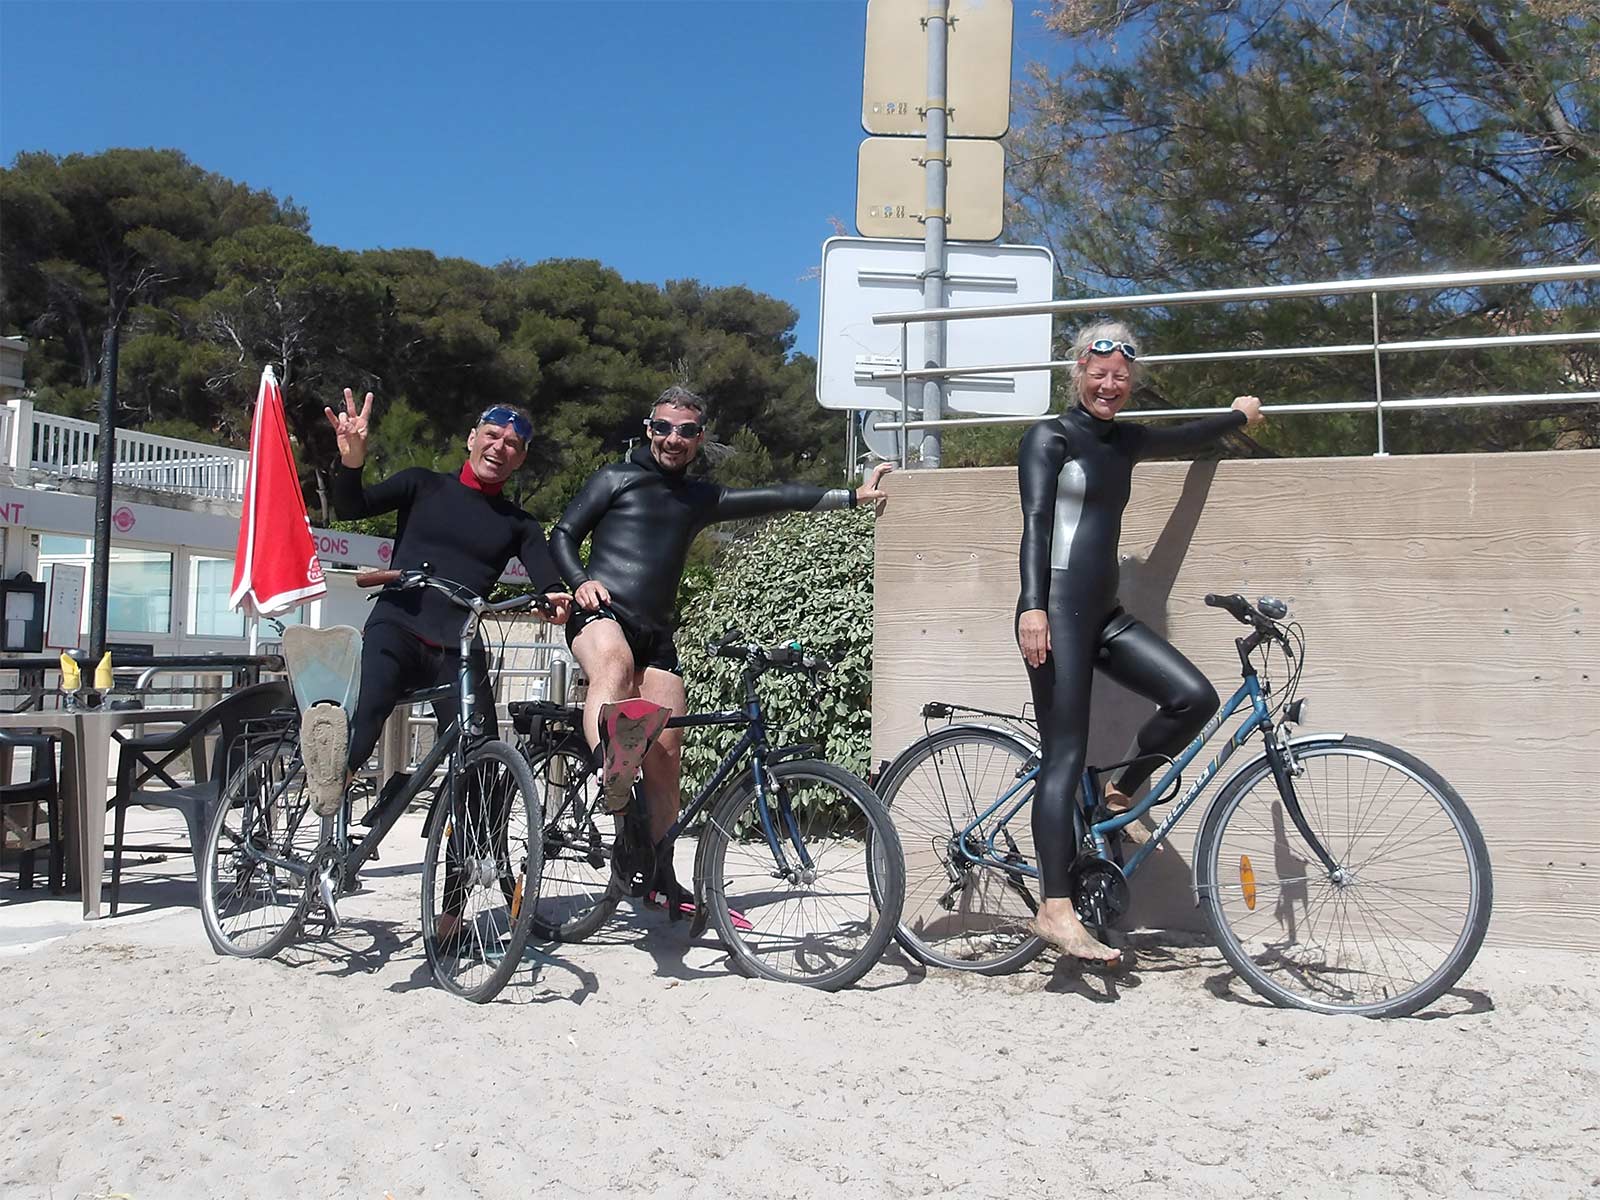 3 Cyclistes nageurs sur la plage de Carry : Katja, Olivier et Benjamin. Il y en avait 2 autres non photographiés : Gilles et Matthieu